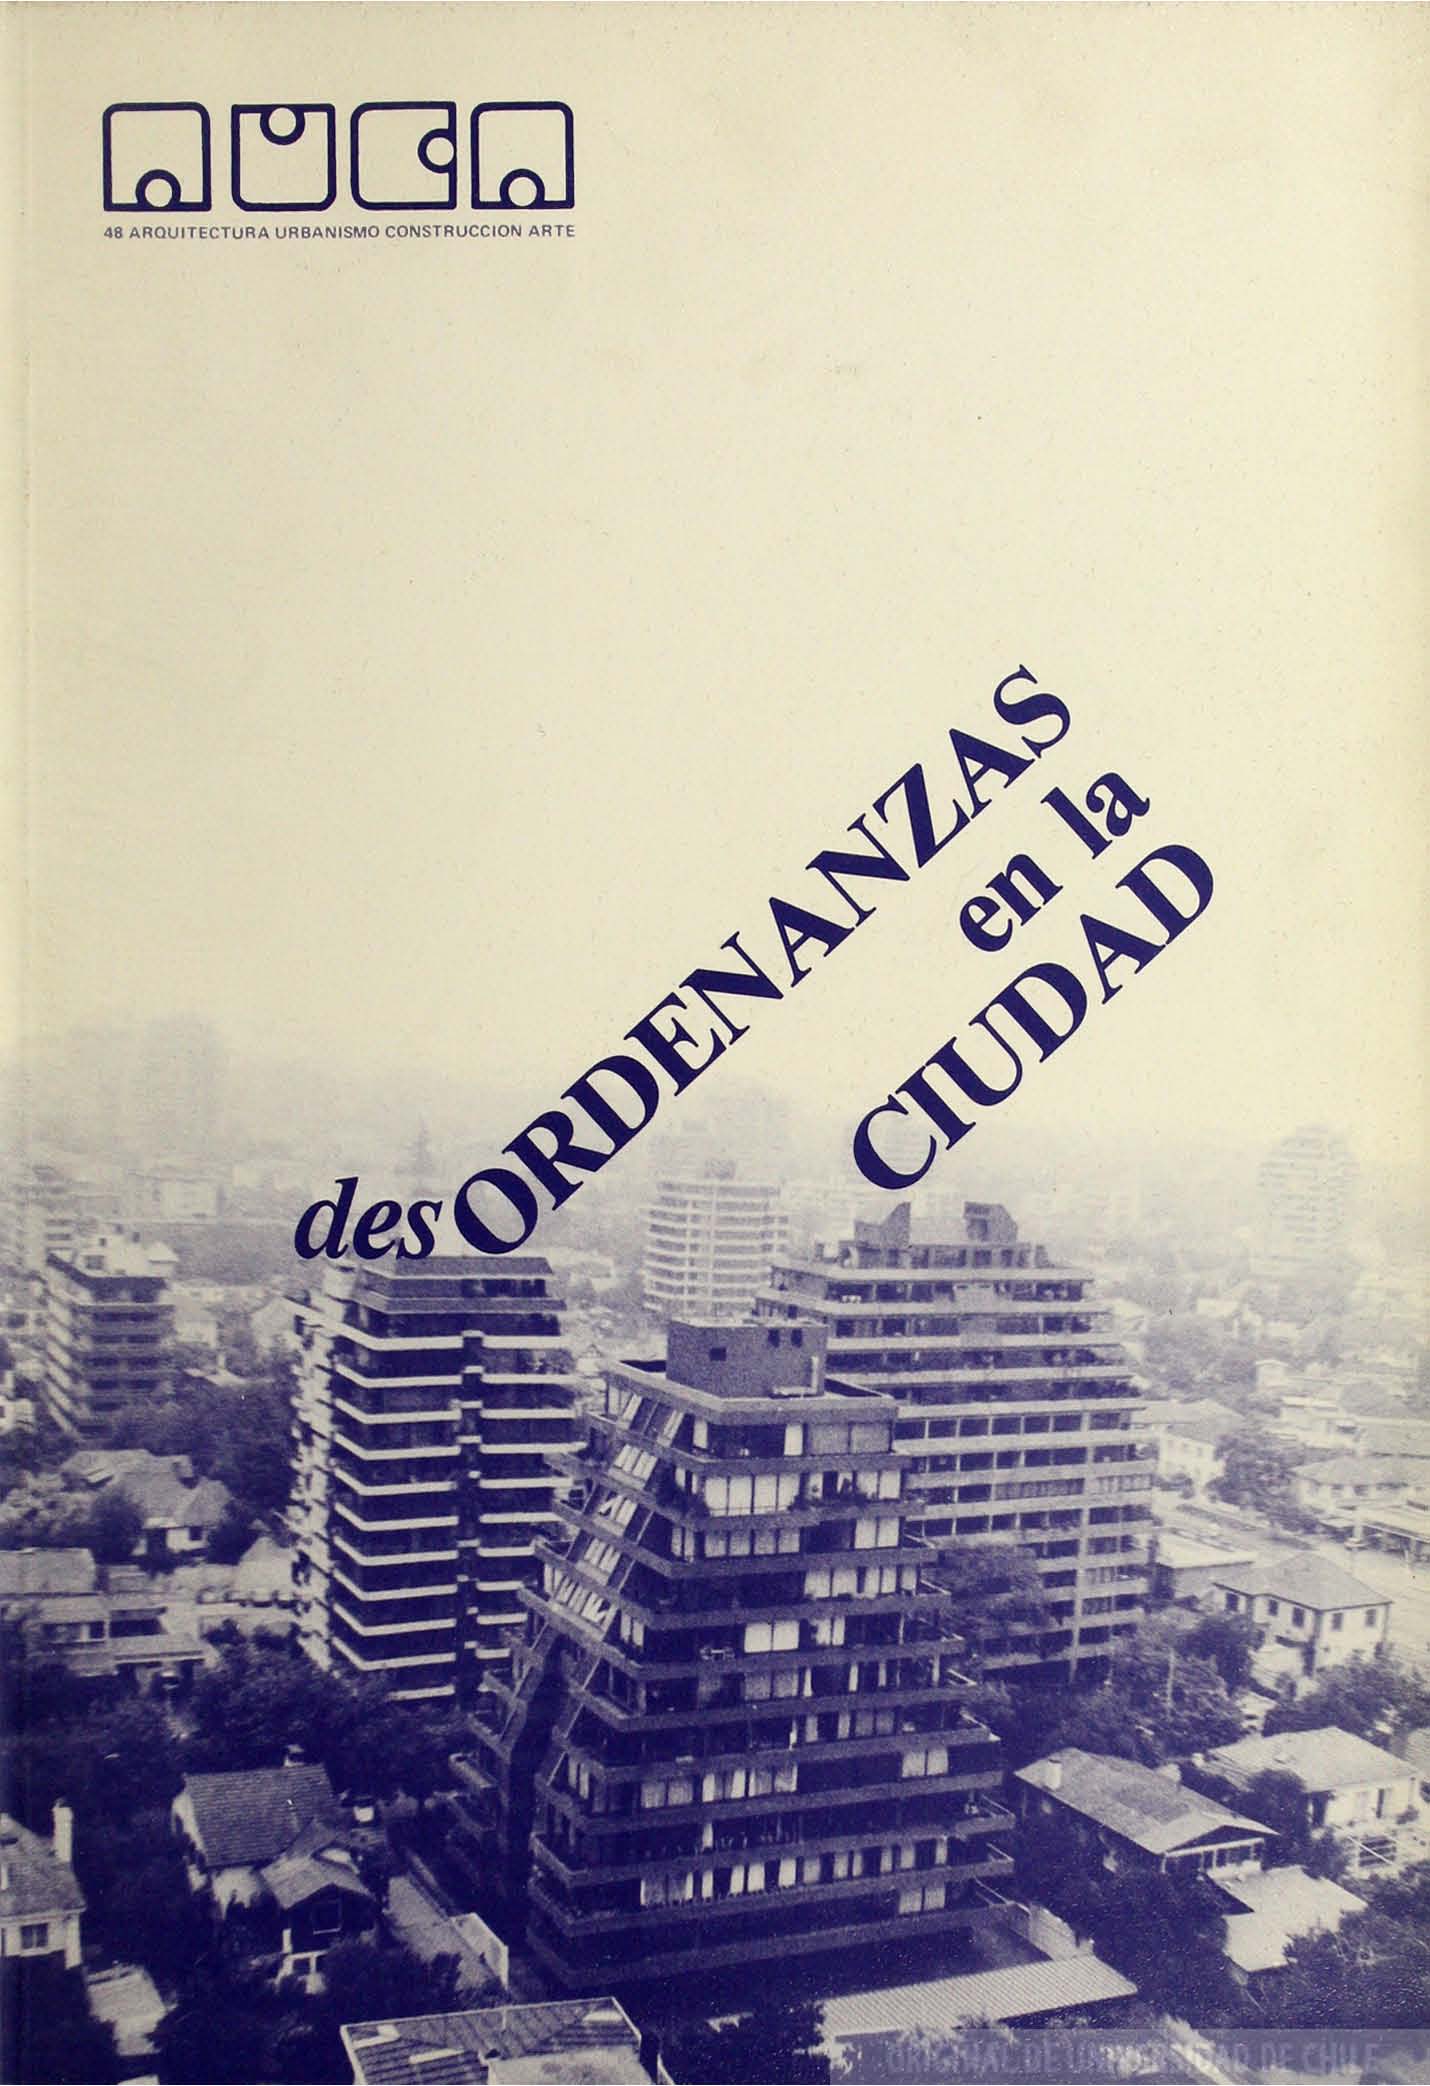 											Ver Núm. 48 (1984): desOrdenanzas en la Ciudad
										